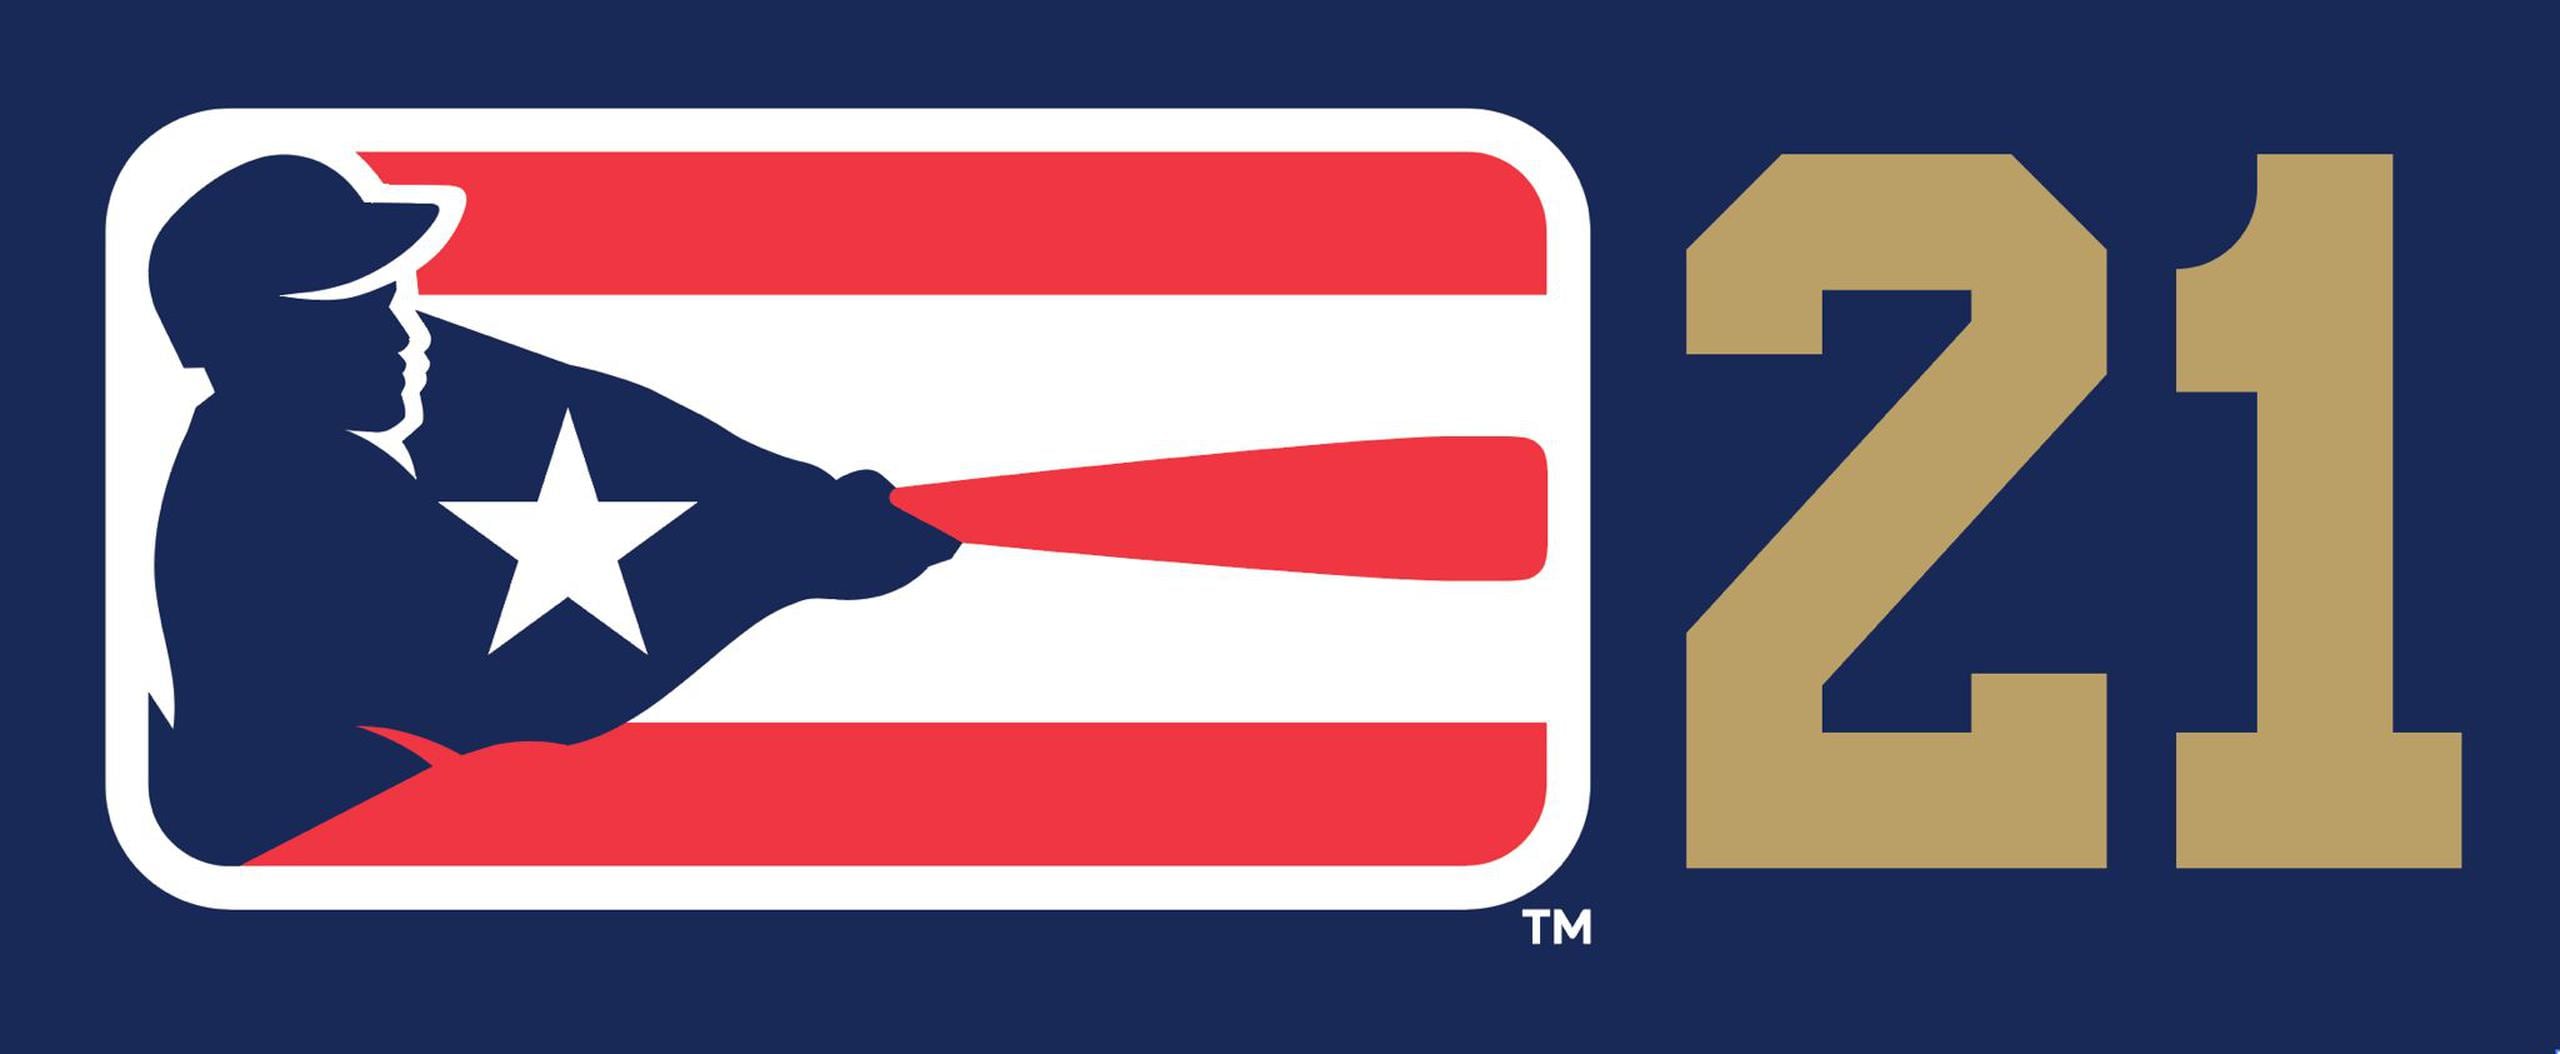 Nuevo logo de la Liga de Béisbol Profesional Roberto Clemente.